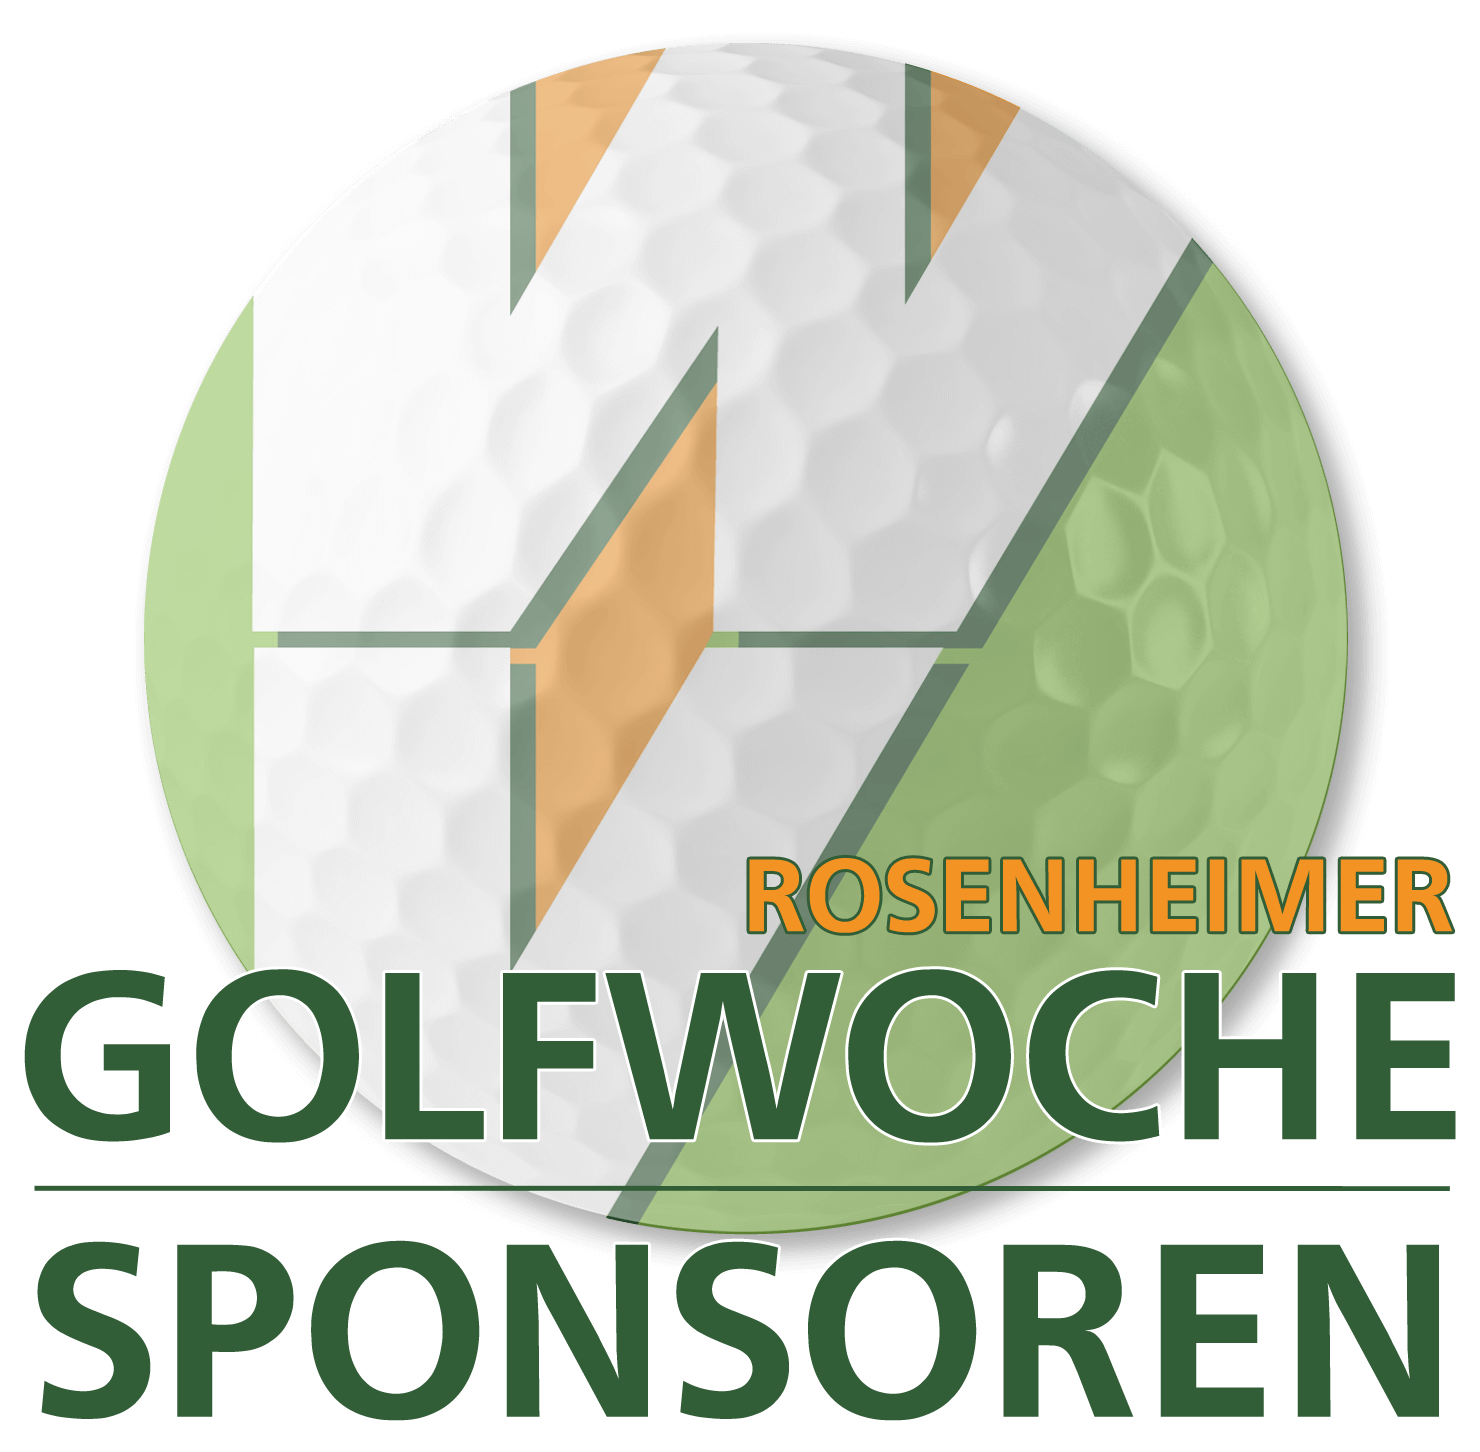 Sponsoren der Rosenheimer Golfwoche 2021